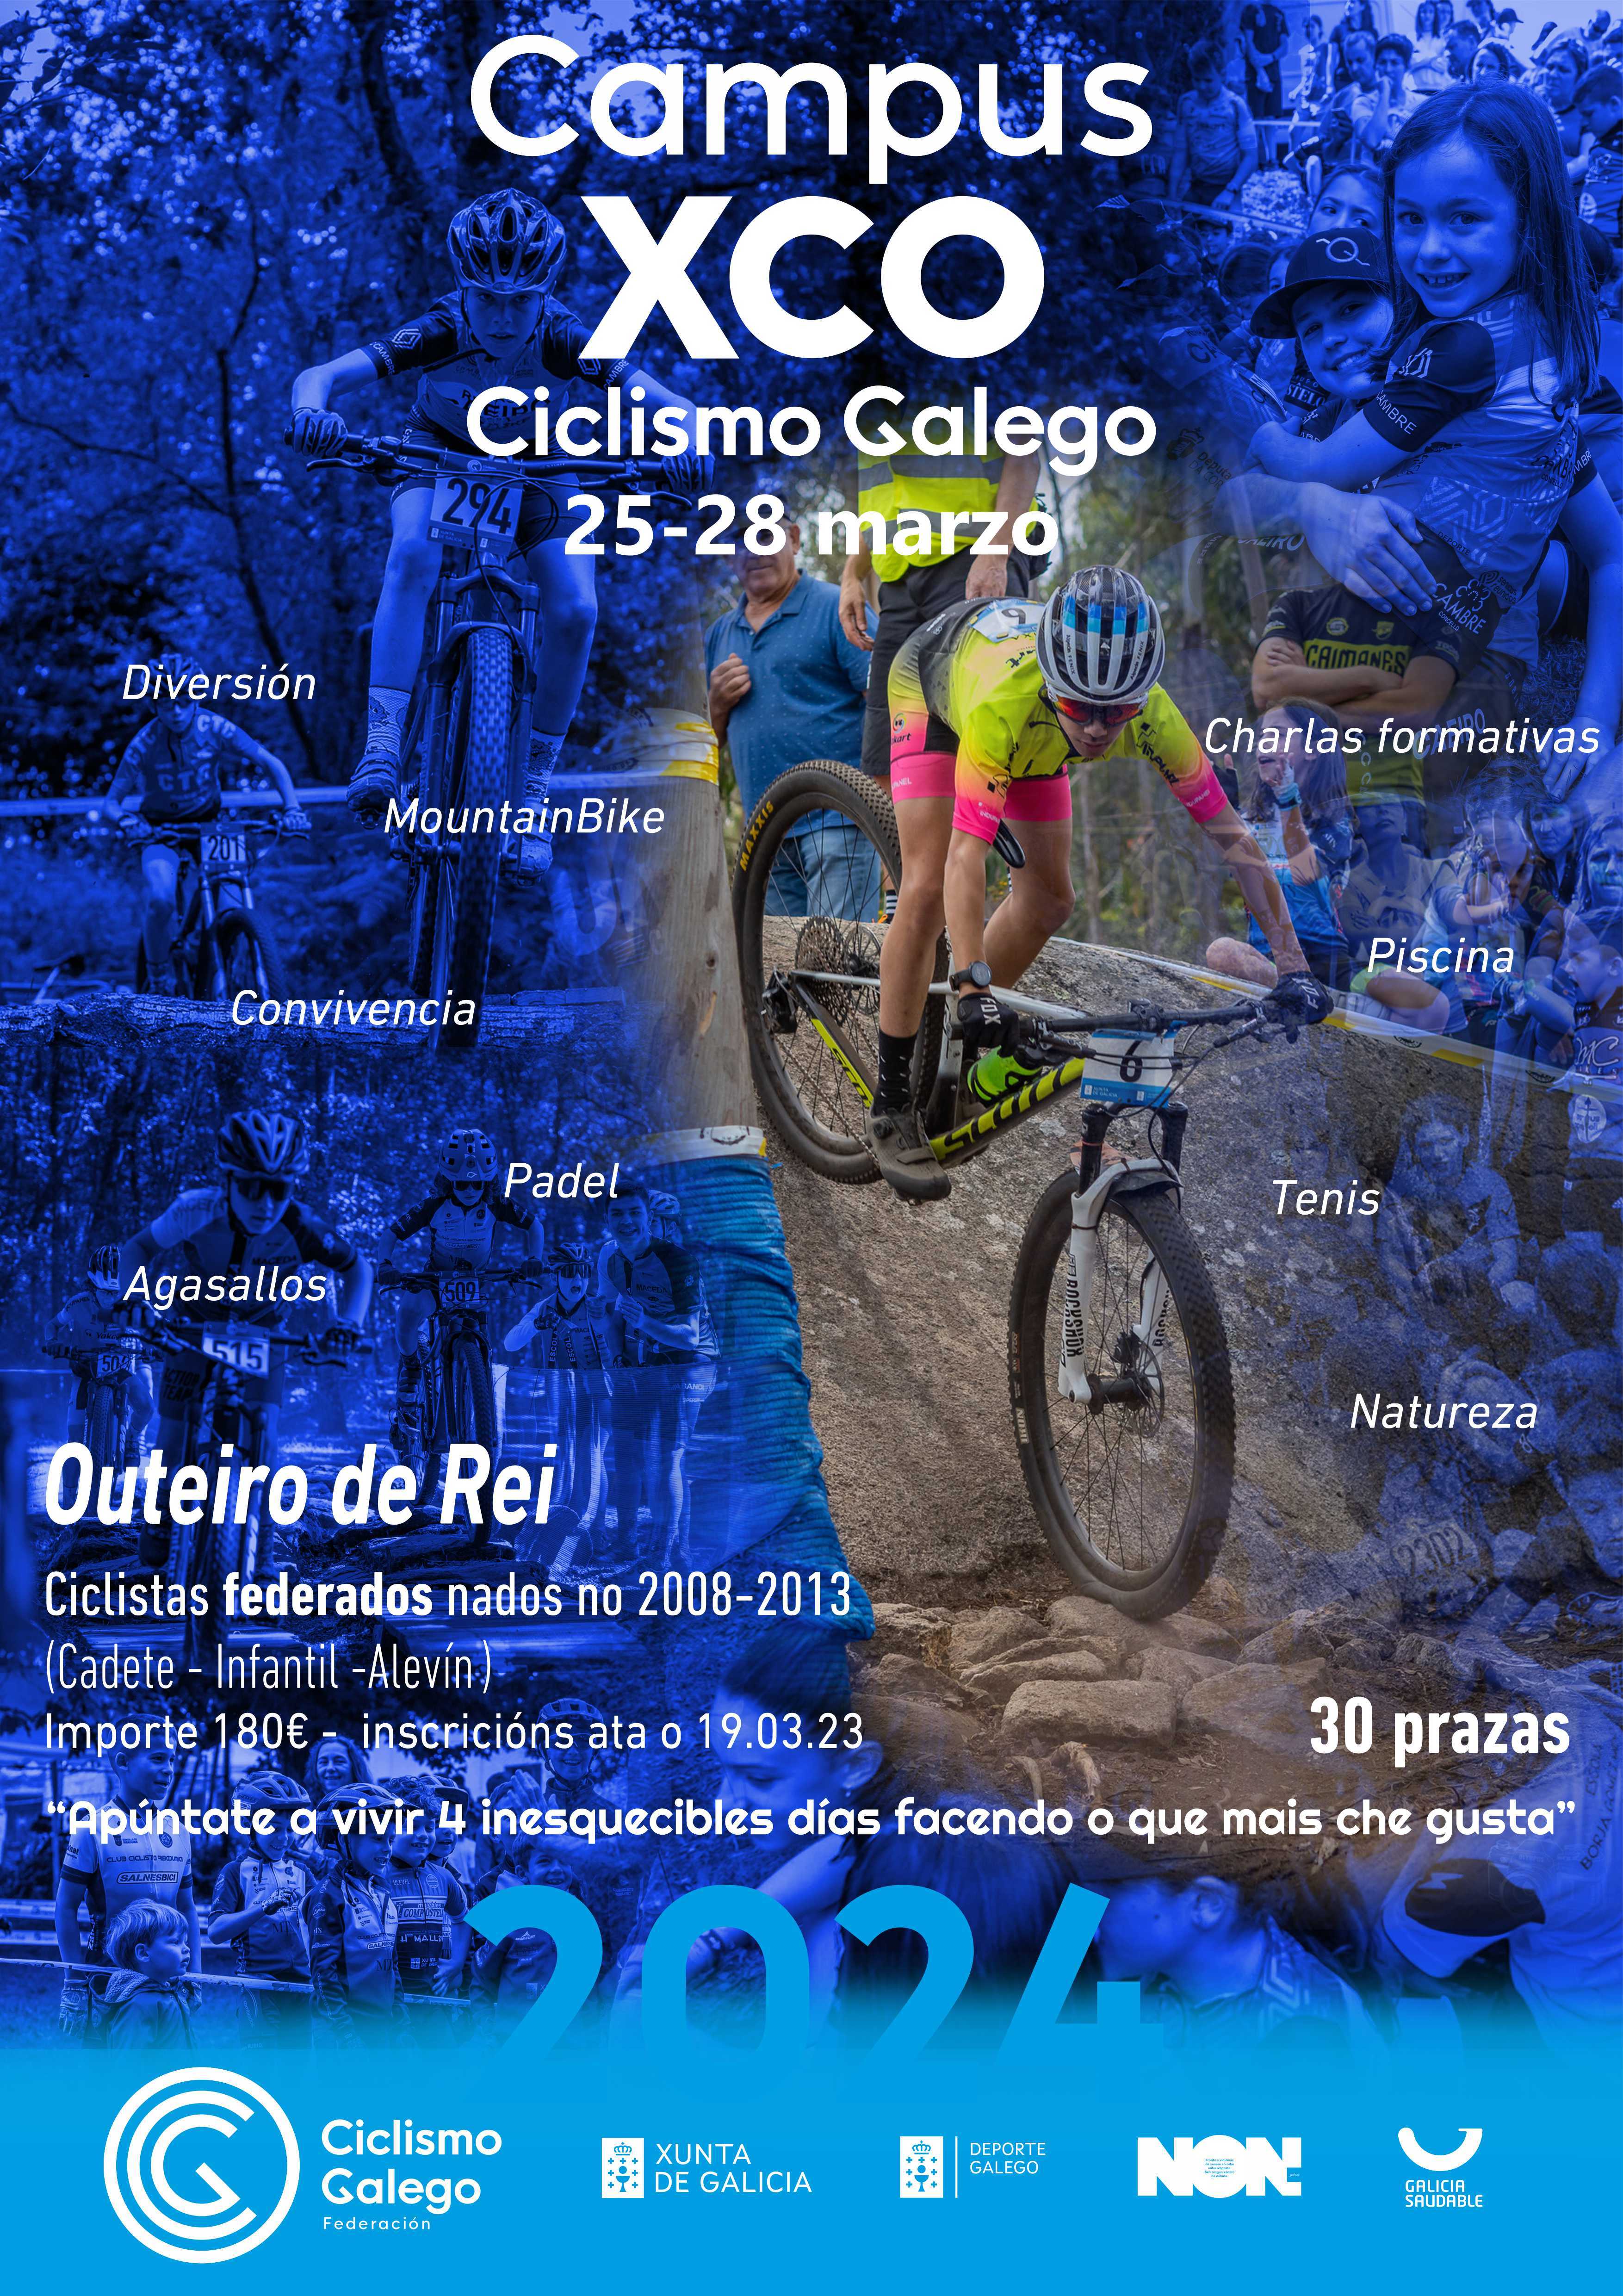 Outra Semana Santa de diversión e formación co Campus XCO Ciclismo Galego